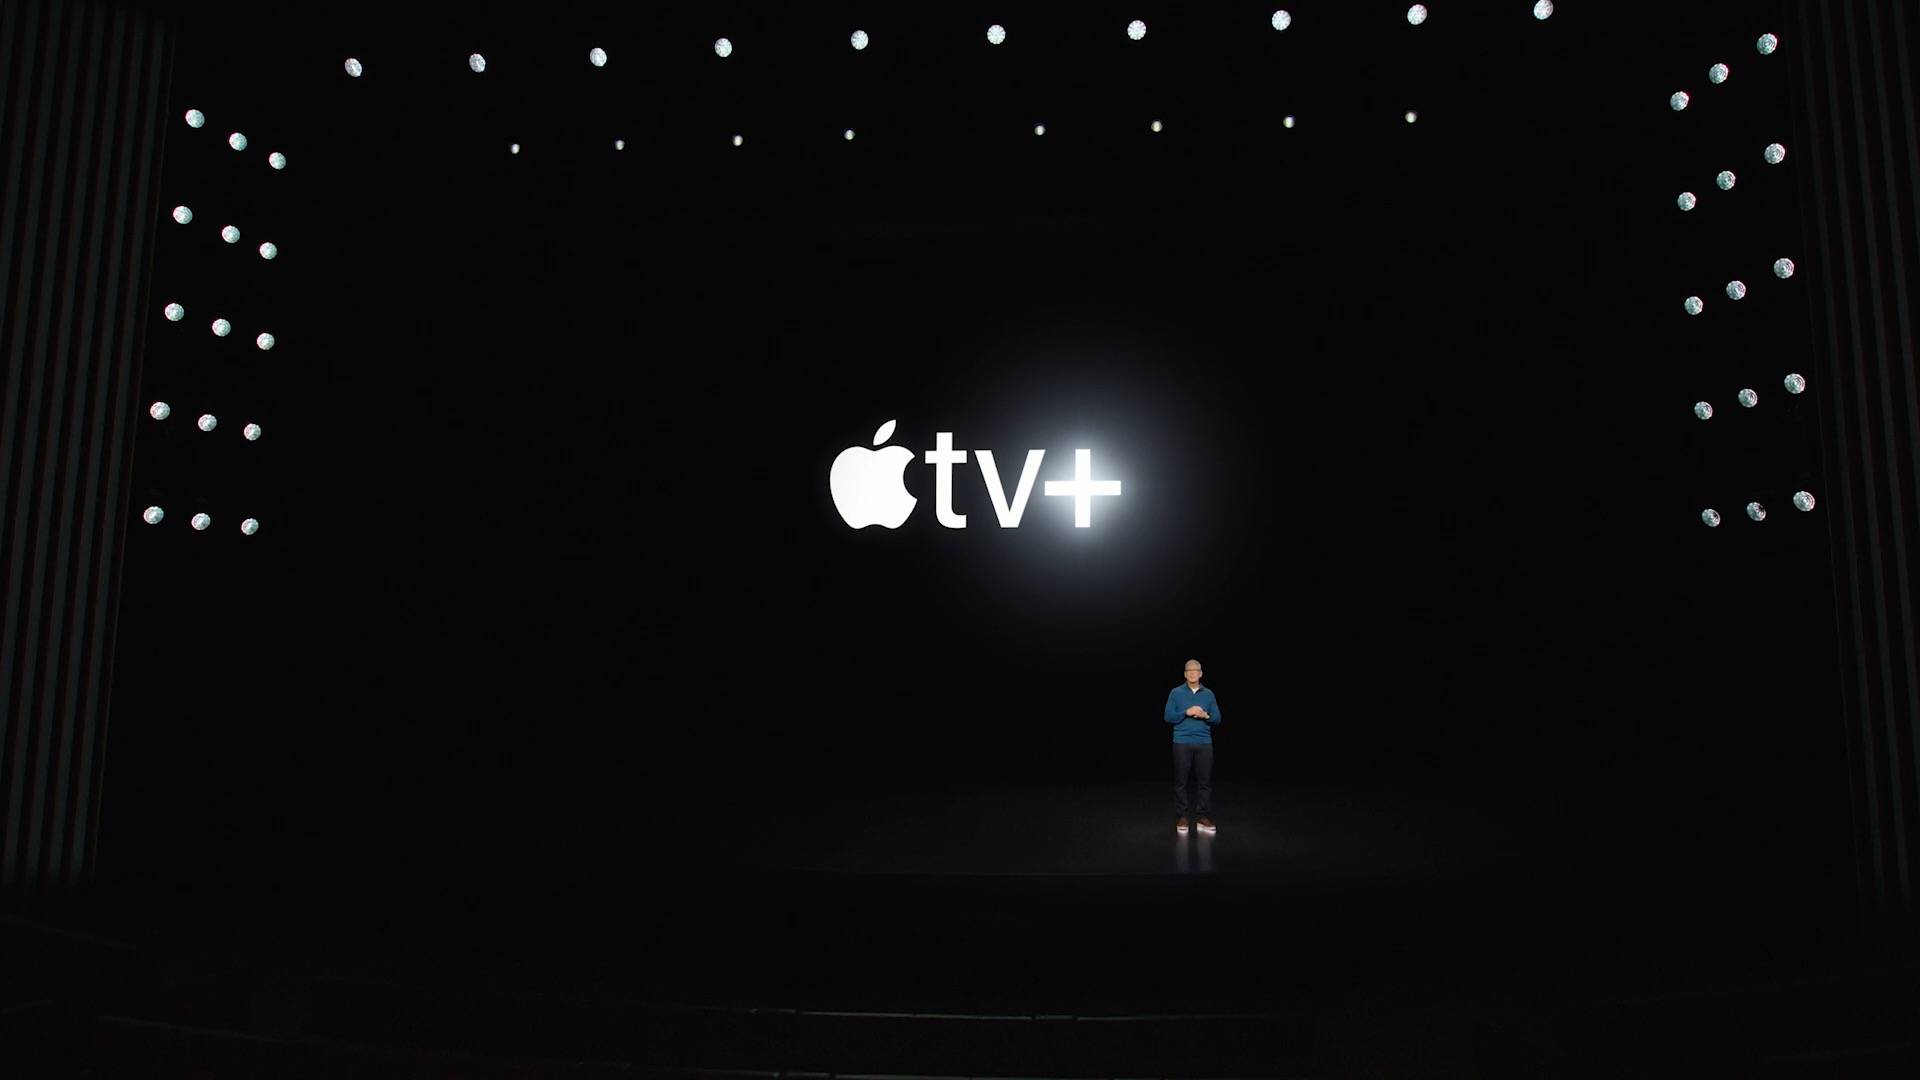 2 14 - Il riassunto completo della conferenza di Apple: l’iPhone 5G più economico non è il protagonista, e il chip “Wang fried” M1 Ultra è così forte che si sente solo